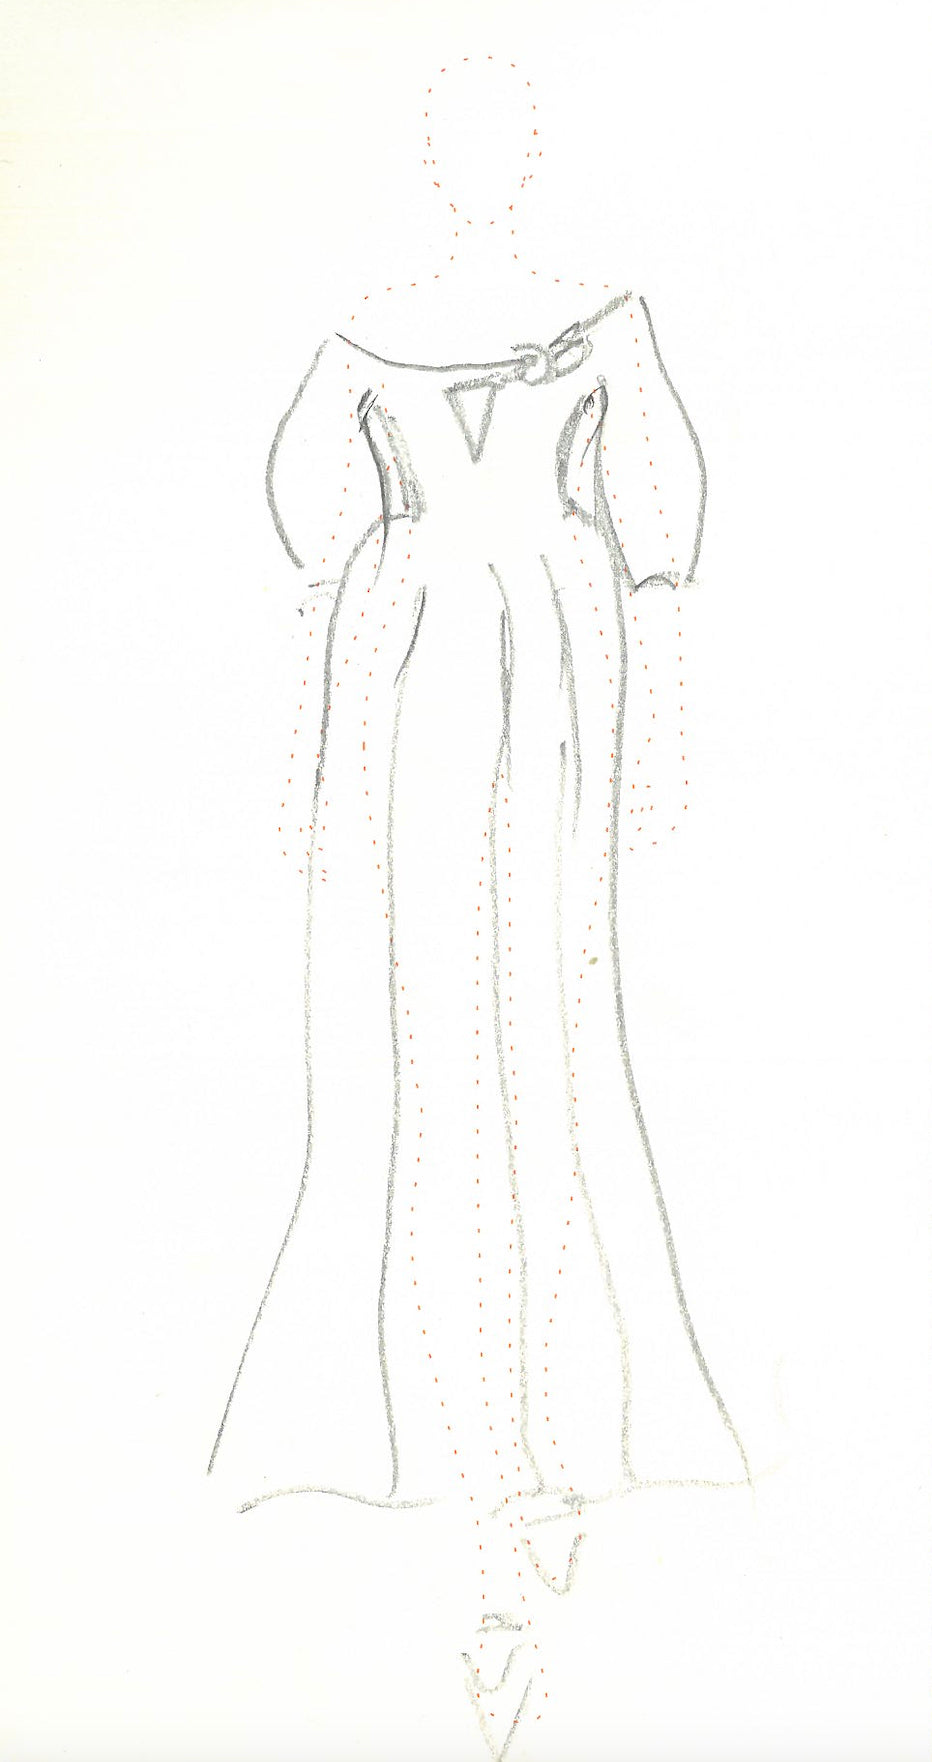 Madyn Sequin Dress in Wool